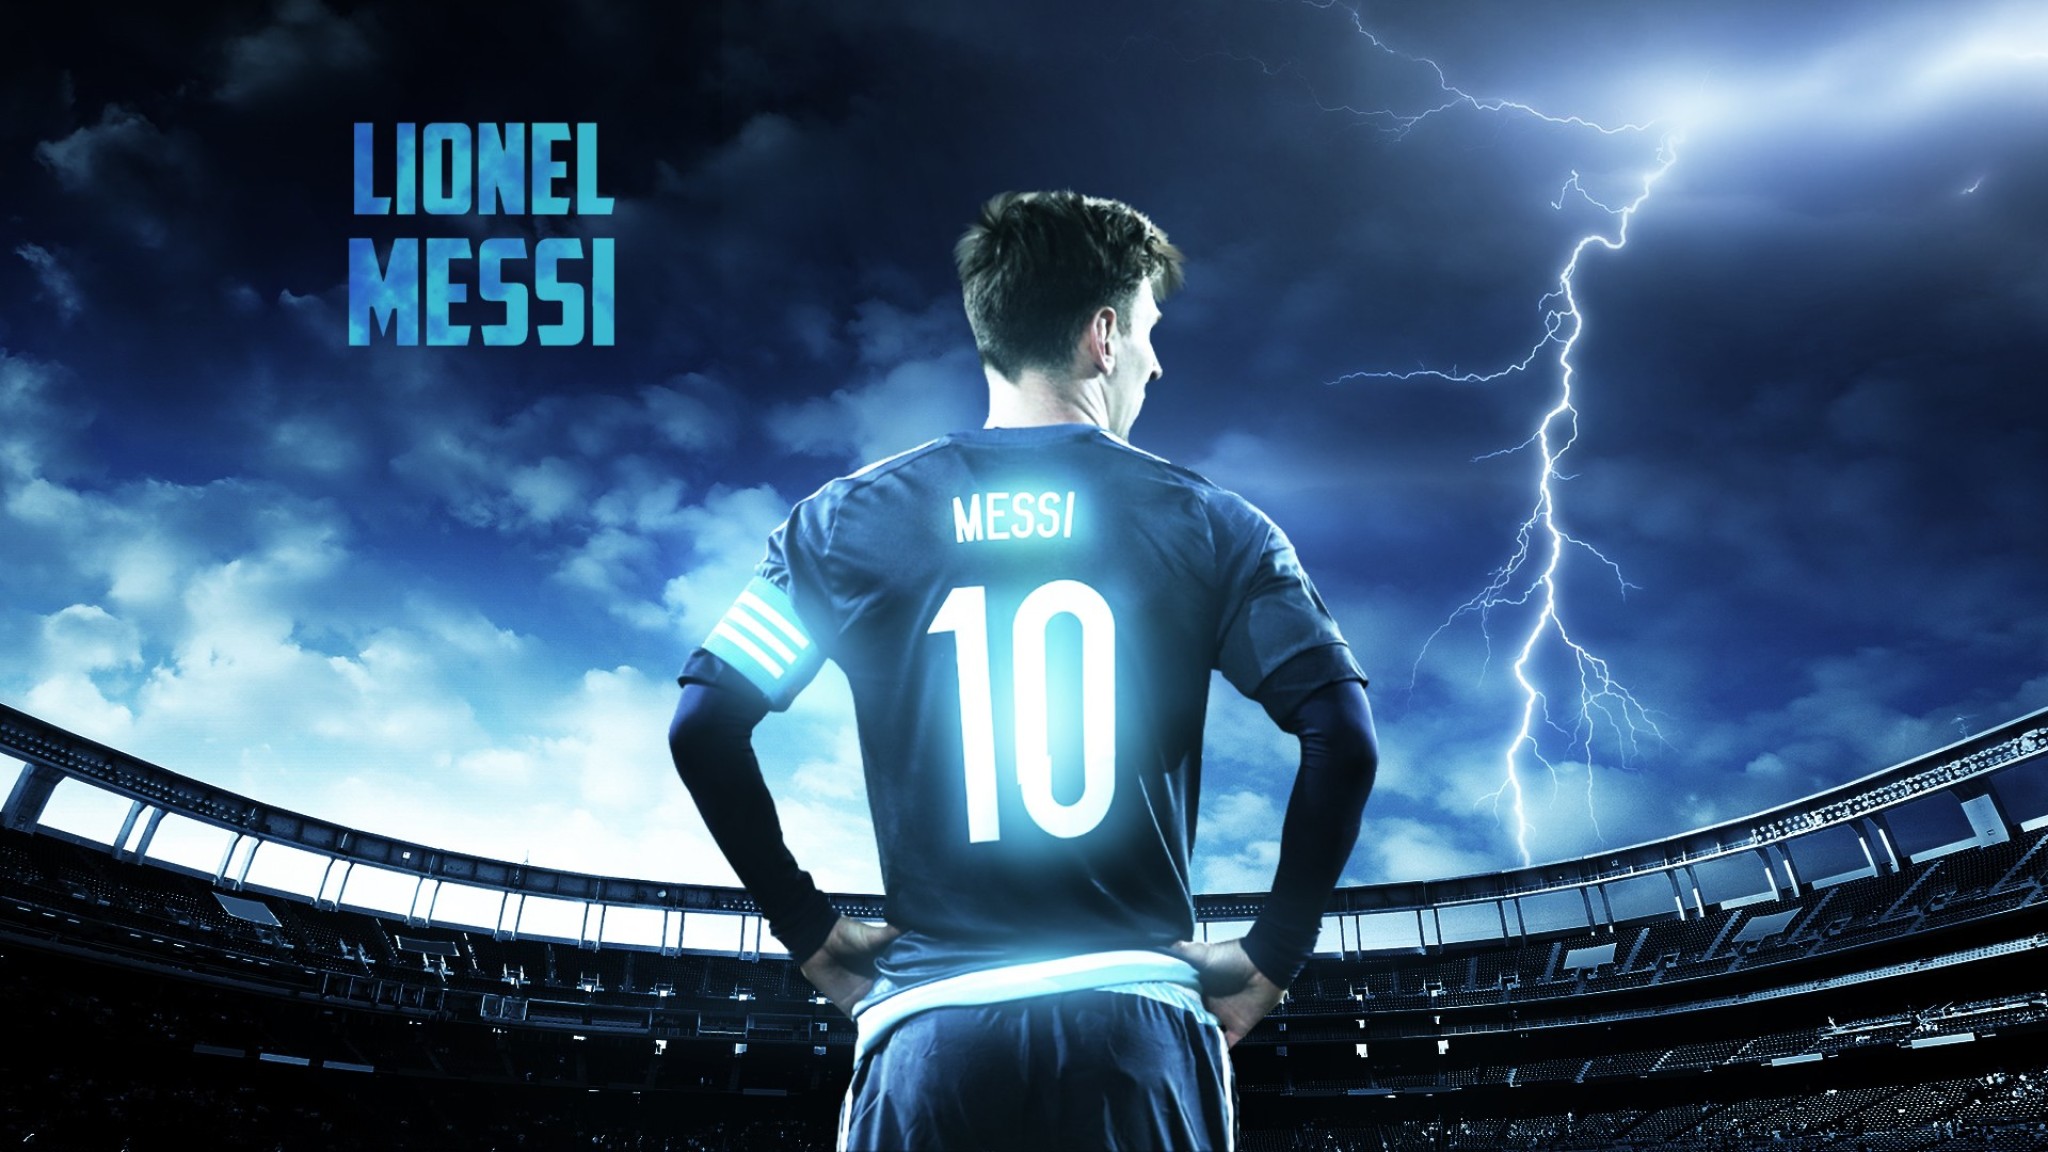 Fondos de pantalla de Messi para PC